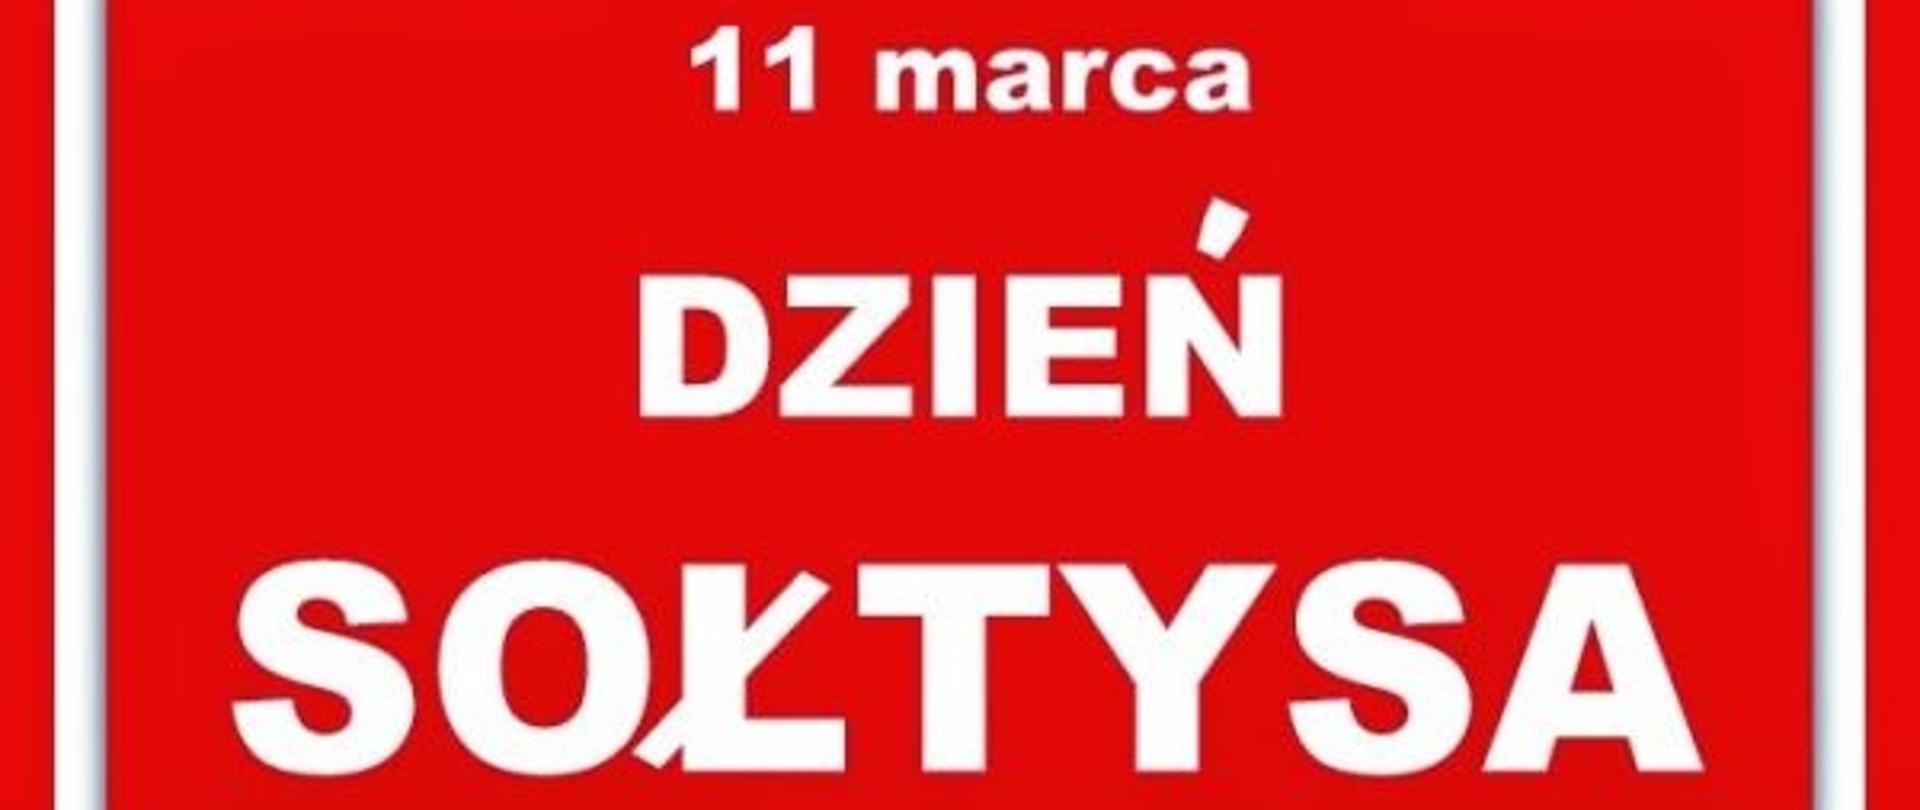 Czerwona tablica z napisem "11 marca Dzień Sołtysa"